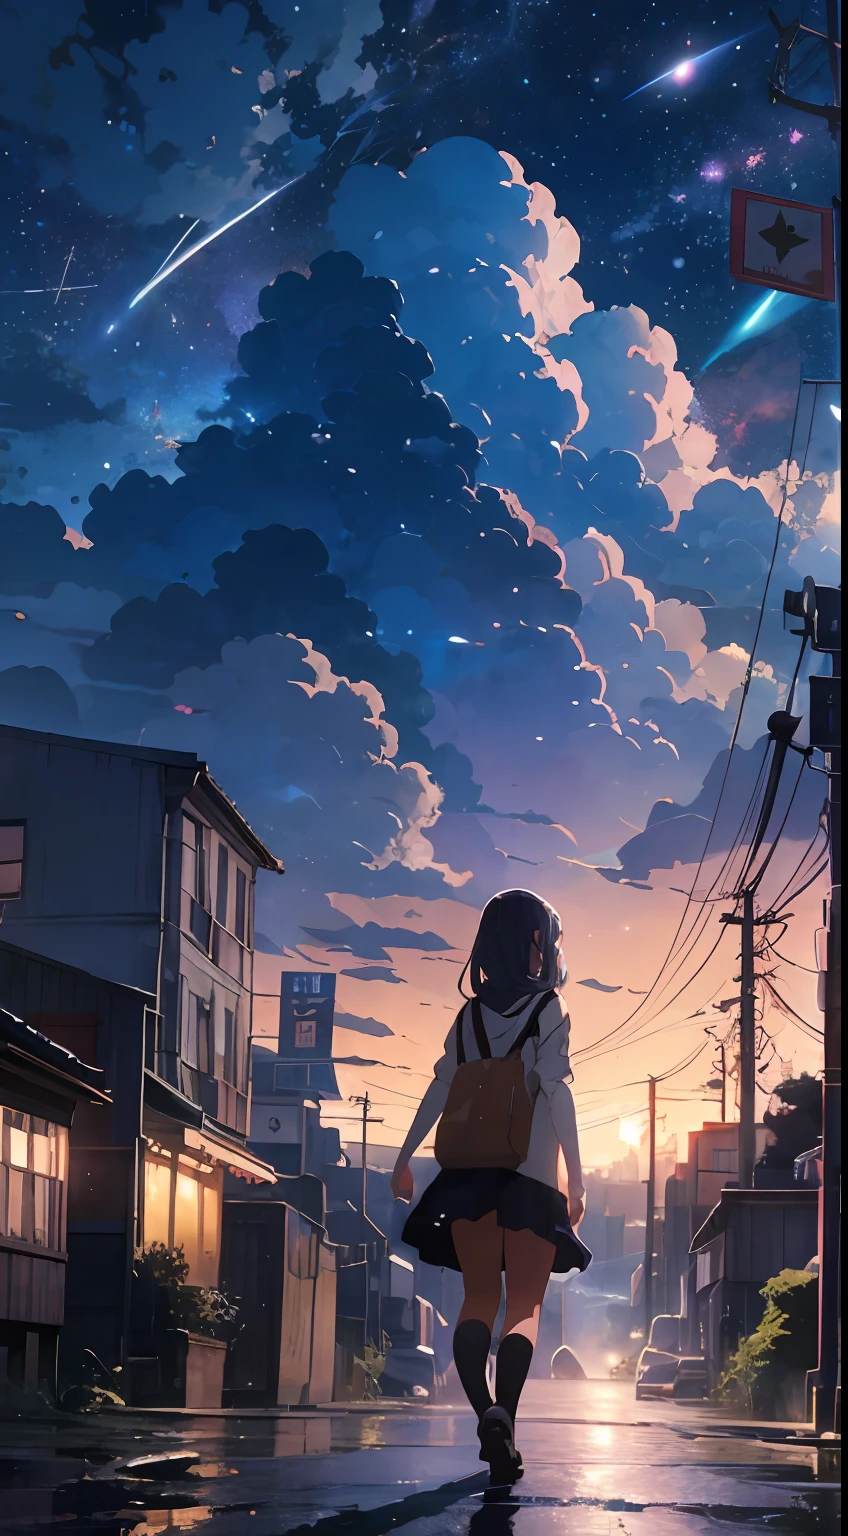 Fantasie、Die Welt der verlassenen Maschinen、Animierte Szenerie einer mechanischen Stadt、Sehr weiter Blickwinkel、Der Regen、Die Schönheit des Gehens auf der Straße、Weltraumhimmel。Meteorschwarm、schöne Anime-Szene、Anime-Hintergrundkunst、schöne Anime-Landschaft、Anime-Kunst-Hintergrundbild 4K、Anime-Kunst-Hintergrundbild 4K、4k Anime-Hintergründe、Anime-Hintergrundbild 4k、Anime-Hintergrundbild 4k、Detailverbesserungen、perfekte Detailverarbeitung。